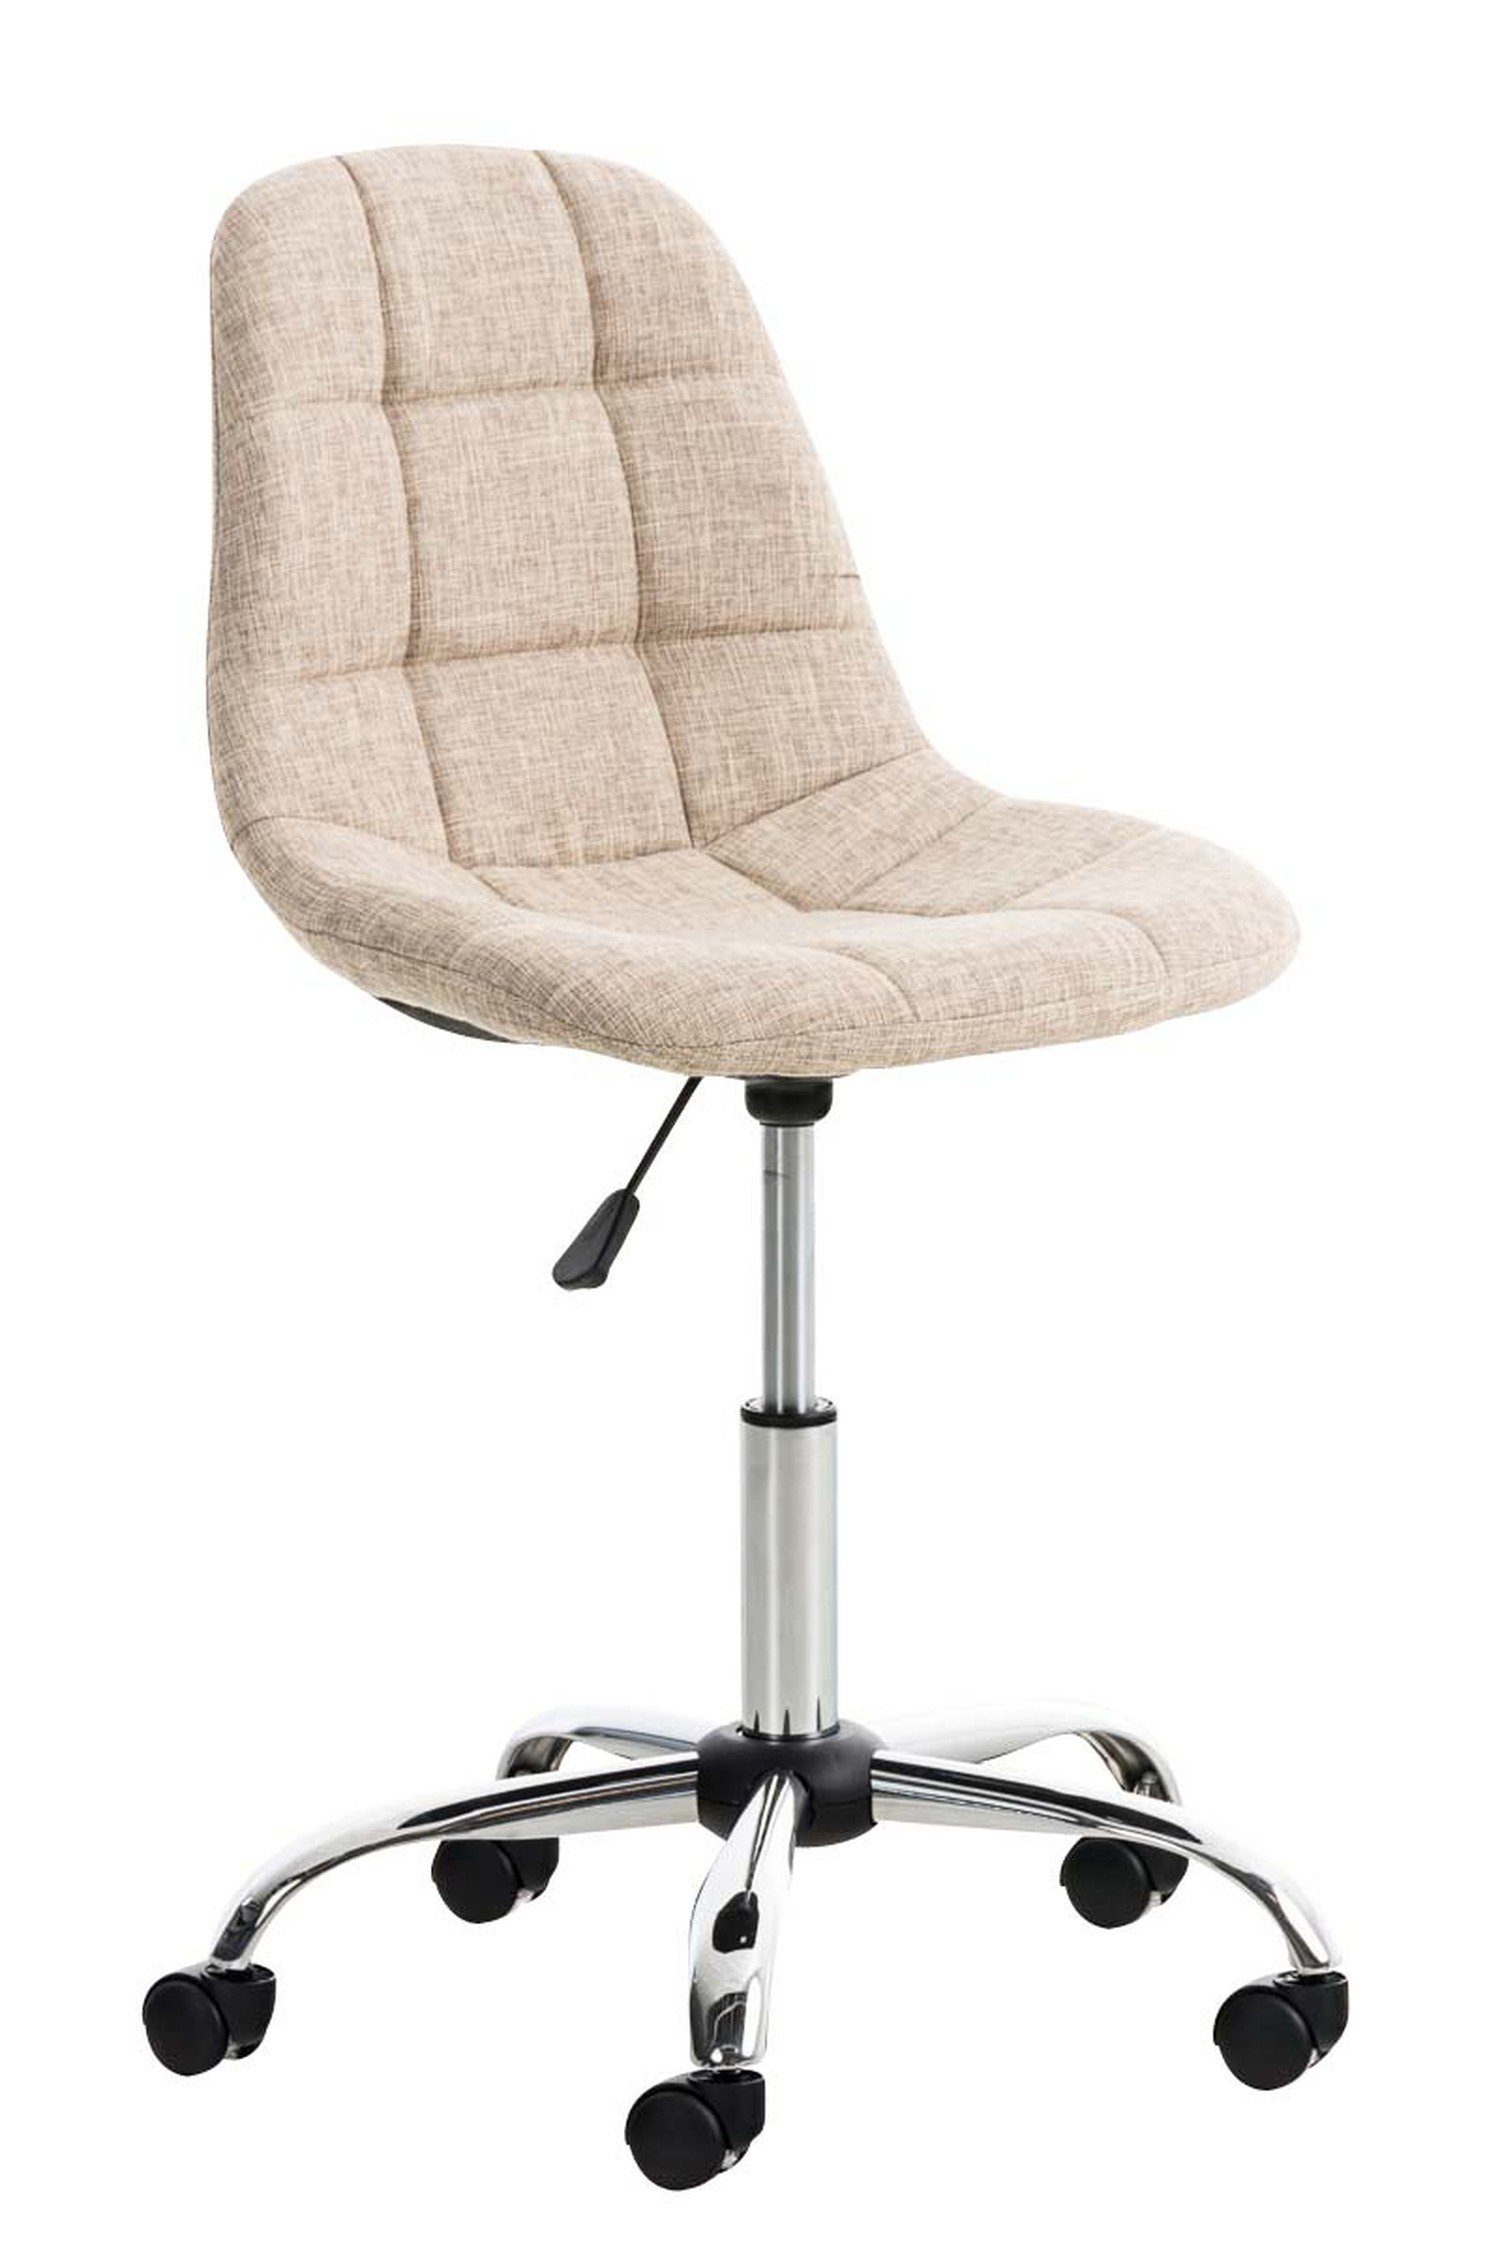 TPFLiving Bürostuhl Emily mit bequemer Rückenlehne - höhenverstellbar und 360° drehbar (Schreibtischstuhl, Drehstuhl, Chefsessel, Konferenzstuhl), Gestell: Metall chrom - Sitzfläche: Stoff creme